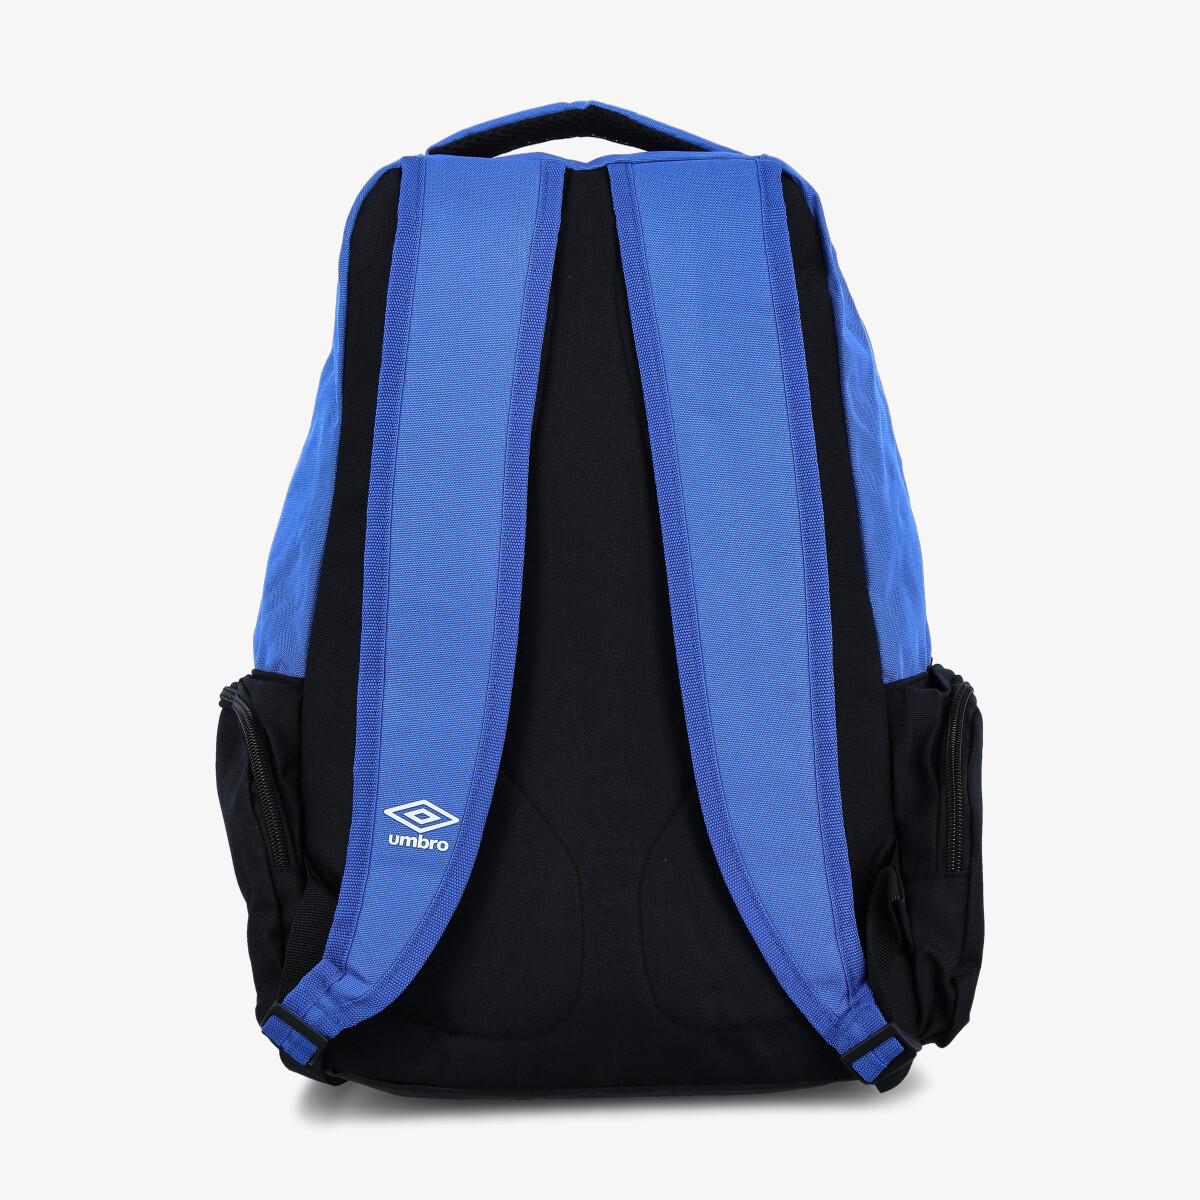 Umbro Silo Backpack 